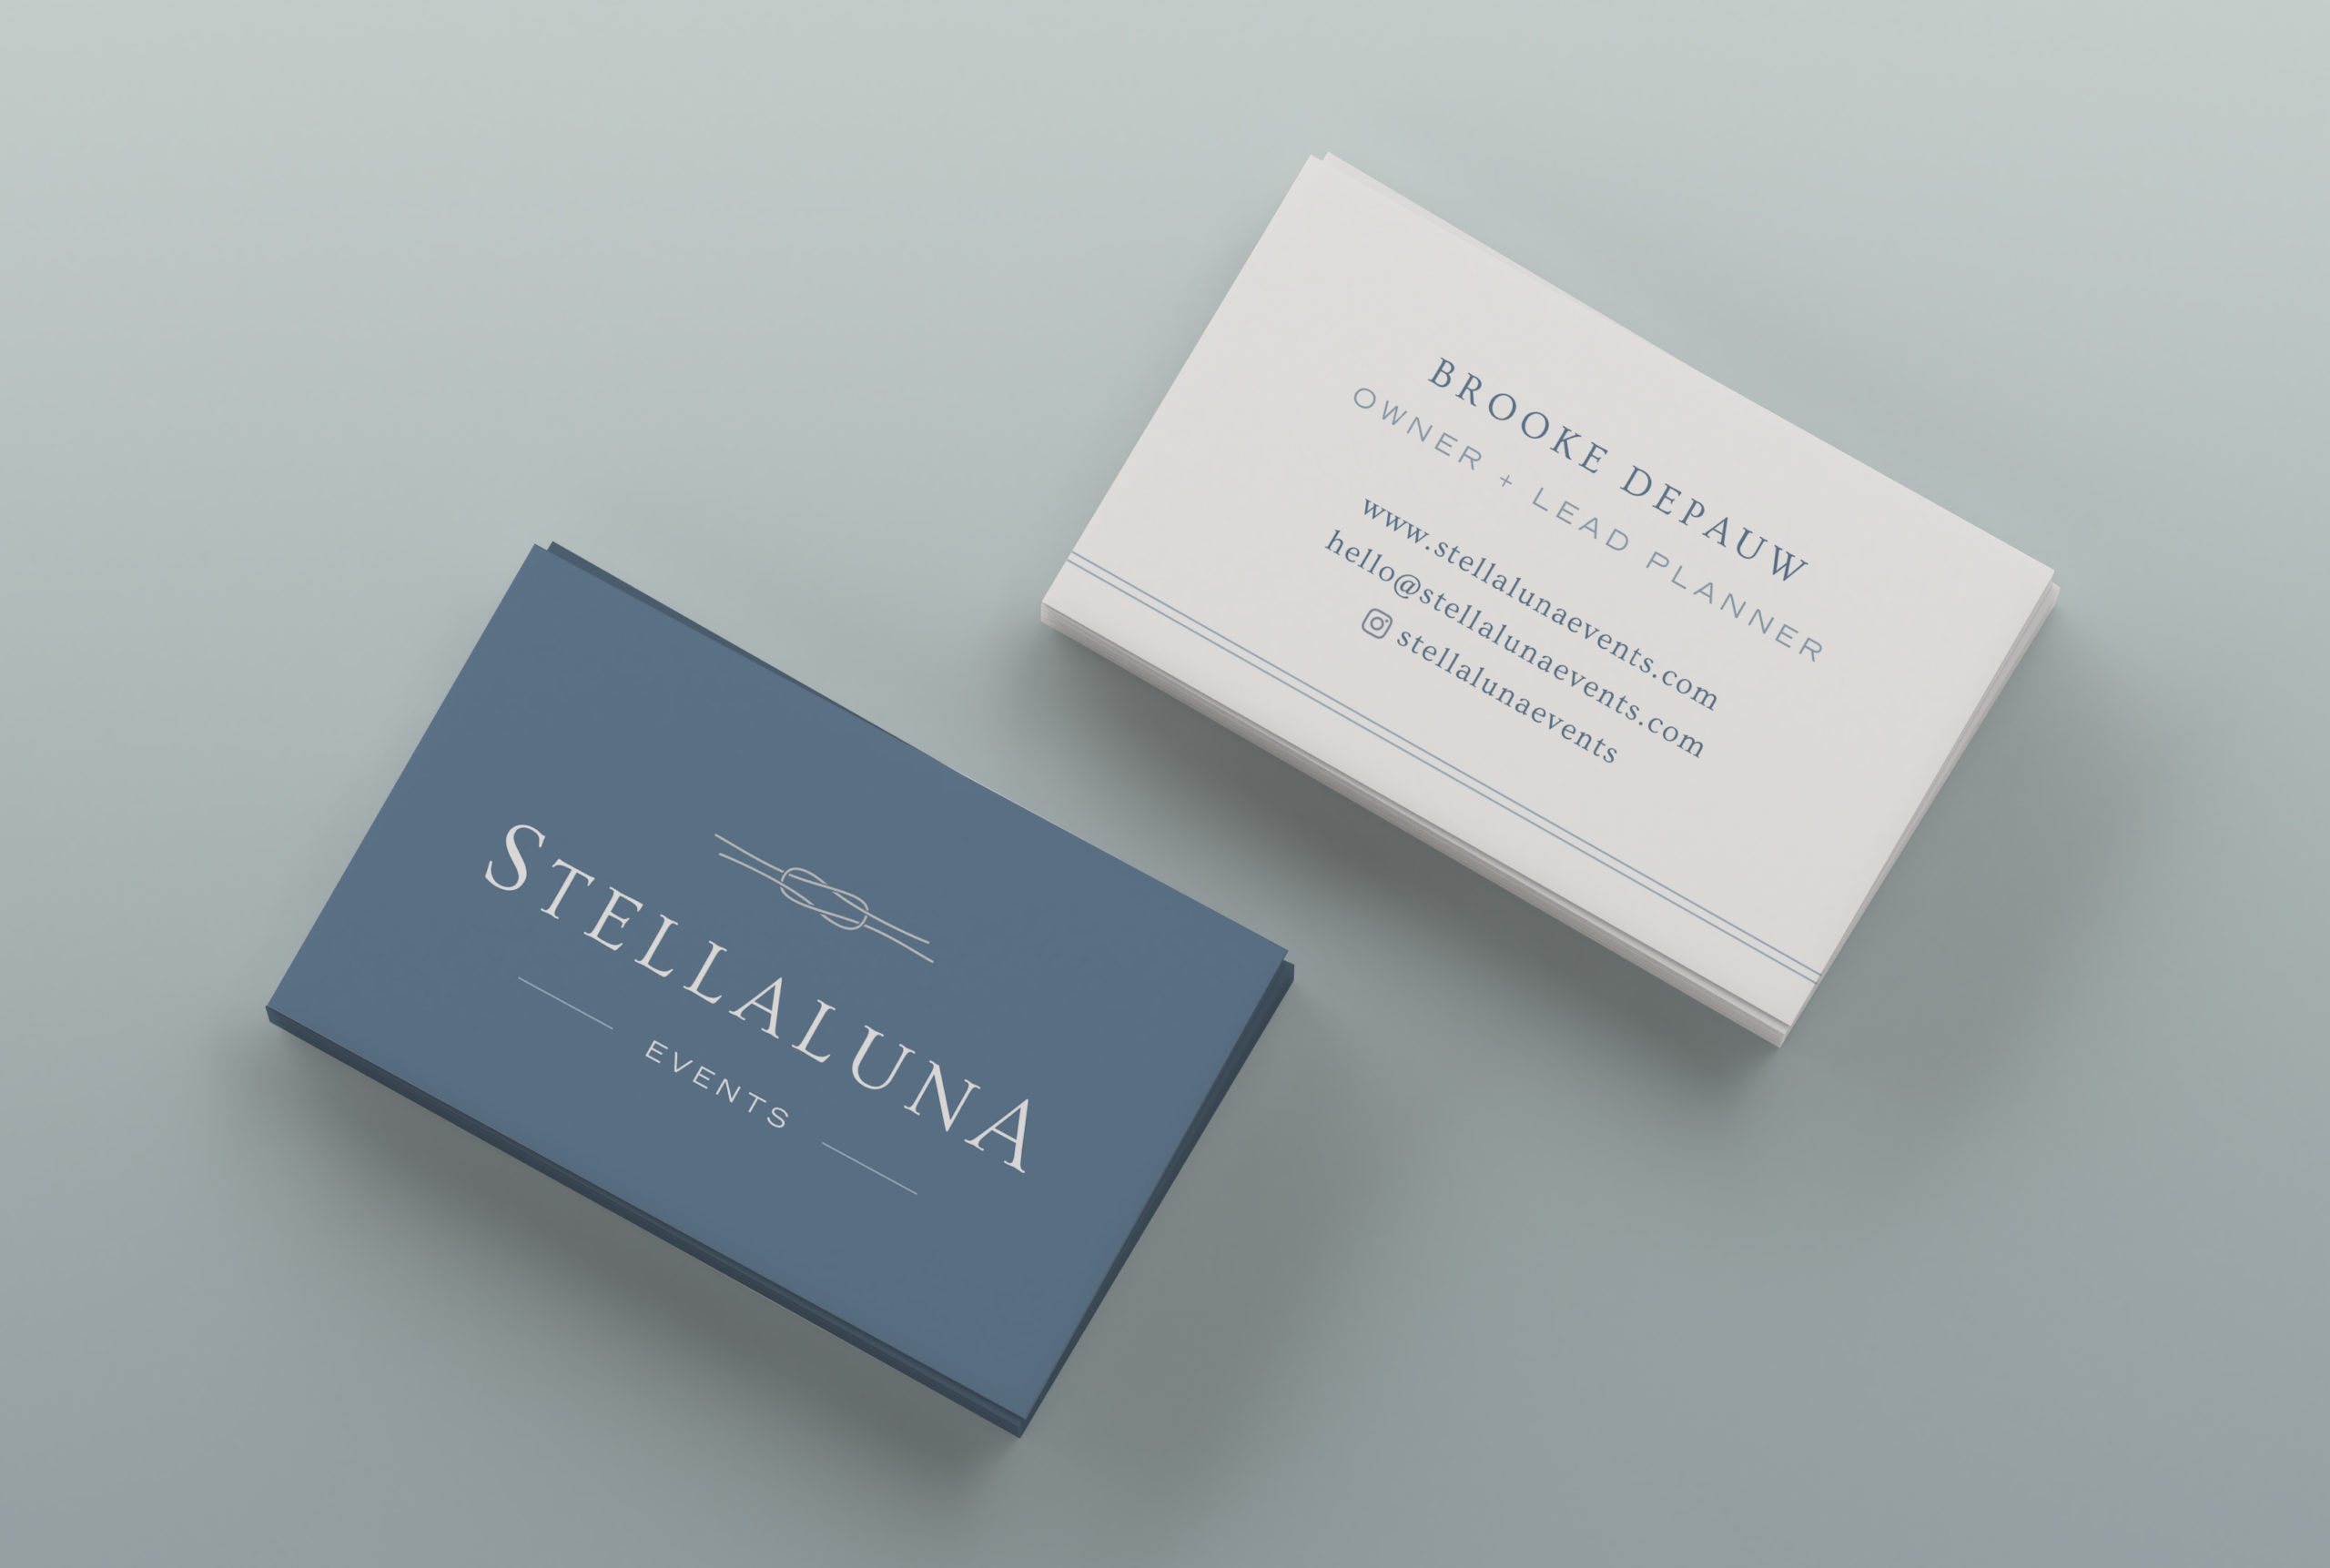 Wedding Planner Brand Design: Stellaluna Events, by Sarah Ann Design